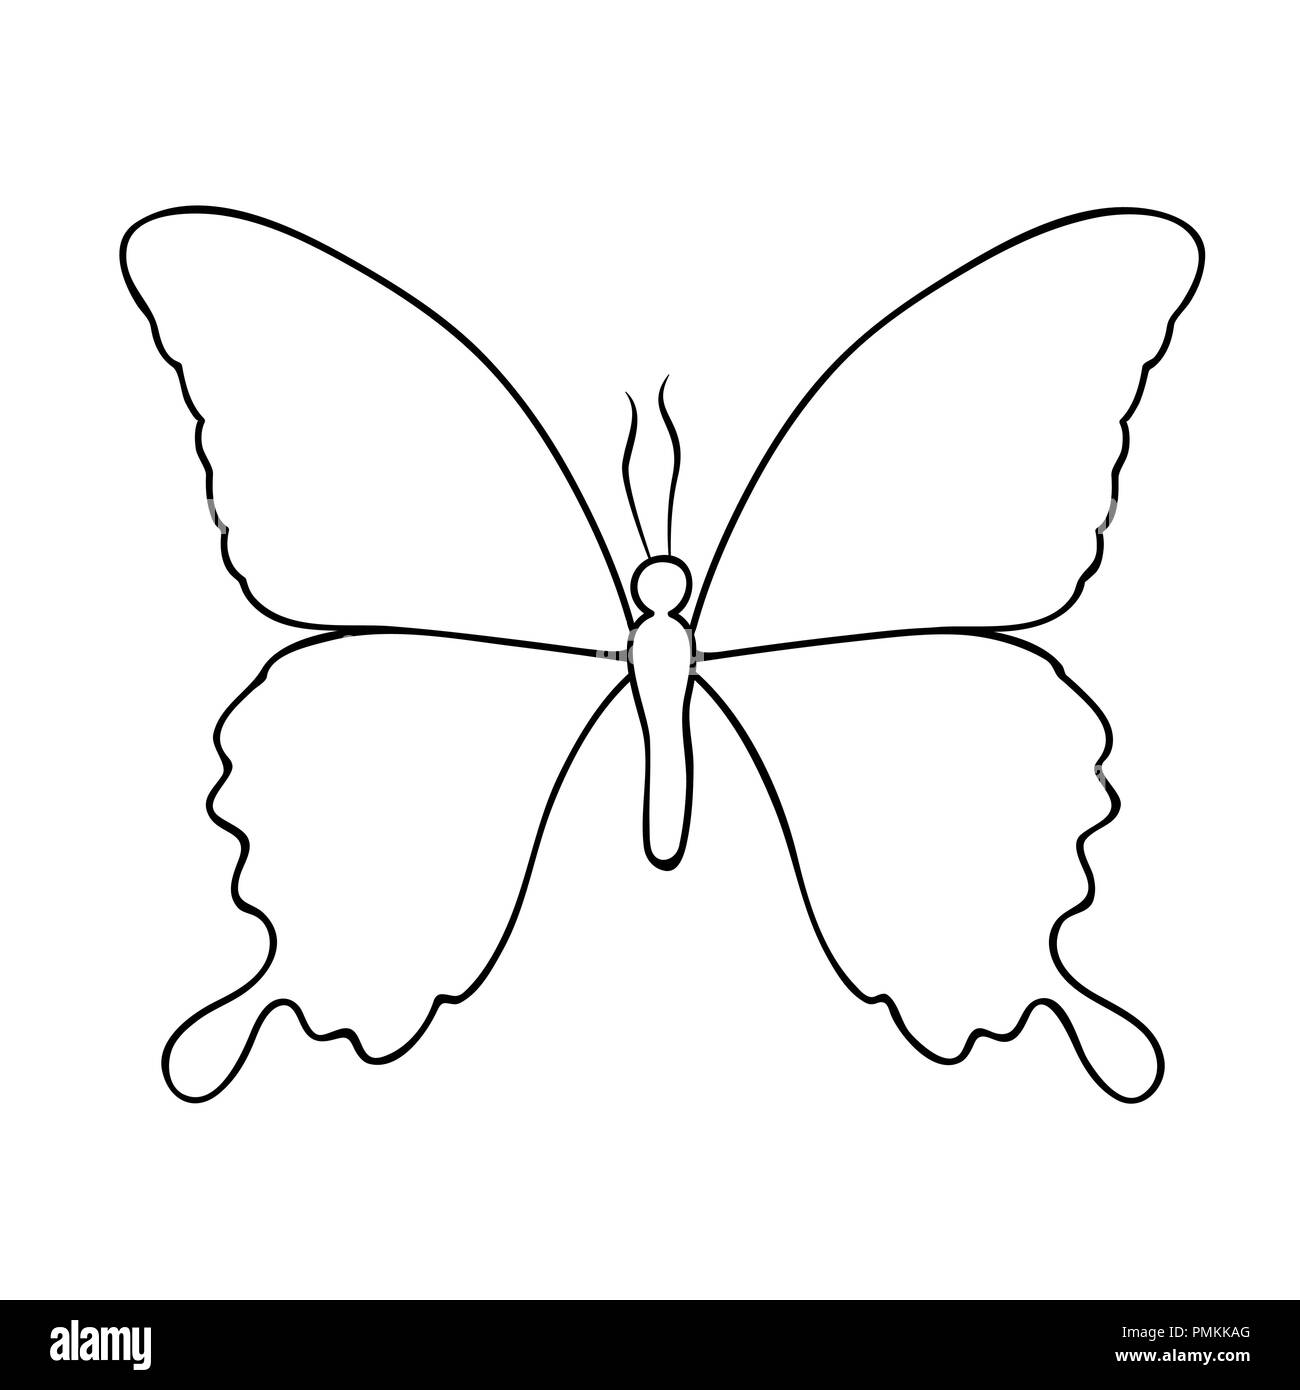 Dessin de ligne papillon isolé sur un fond blanc vector illustration EPS10 Illustration de Vecteur